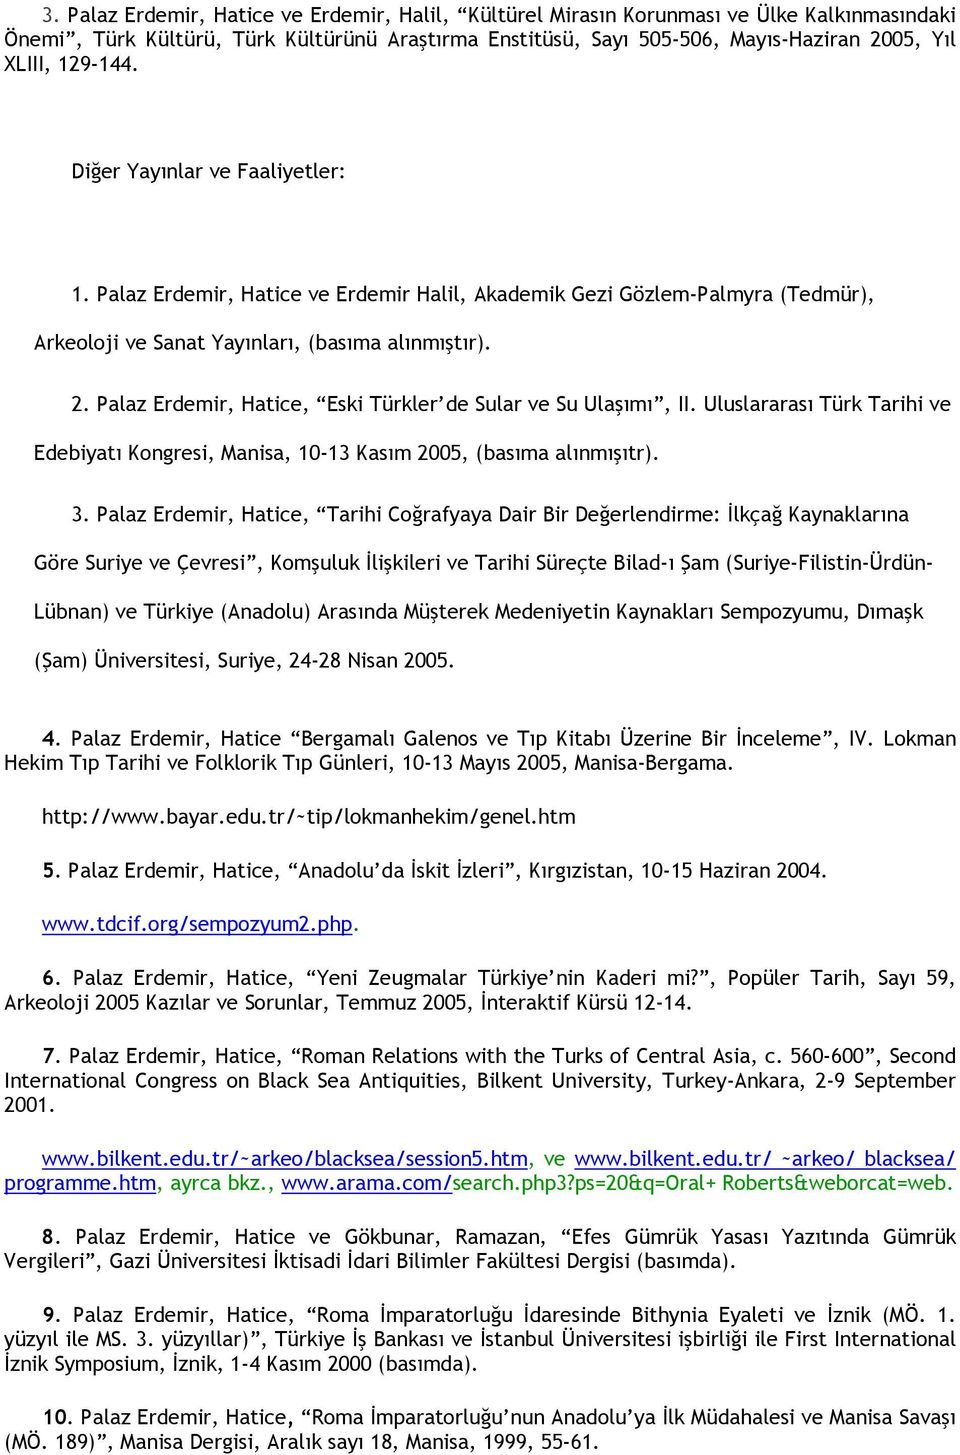 Palaz Erdemir, Hatice, Eski Türkler de Sular ve Su Ulaşımı, II. Uluslararası Türk Tarihi ve Edebiyatı Kongresi, Manisa, 10-13 Kasım 2005, (basıma alınmışıtr). 3.